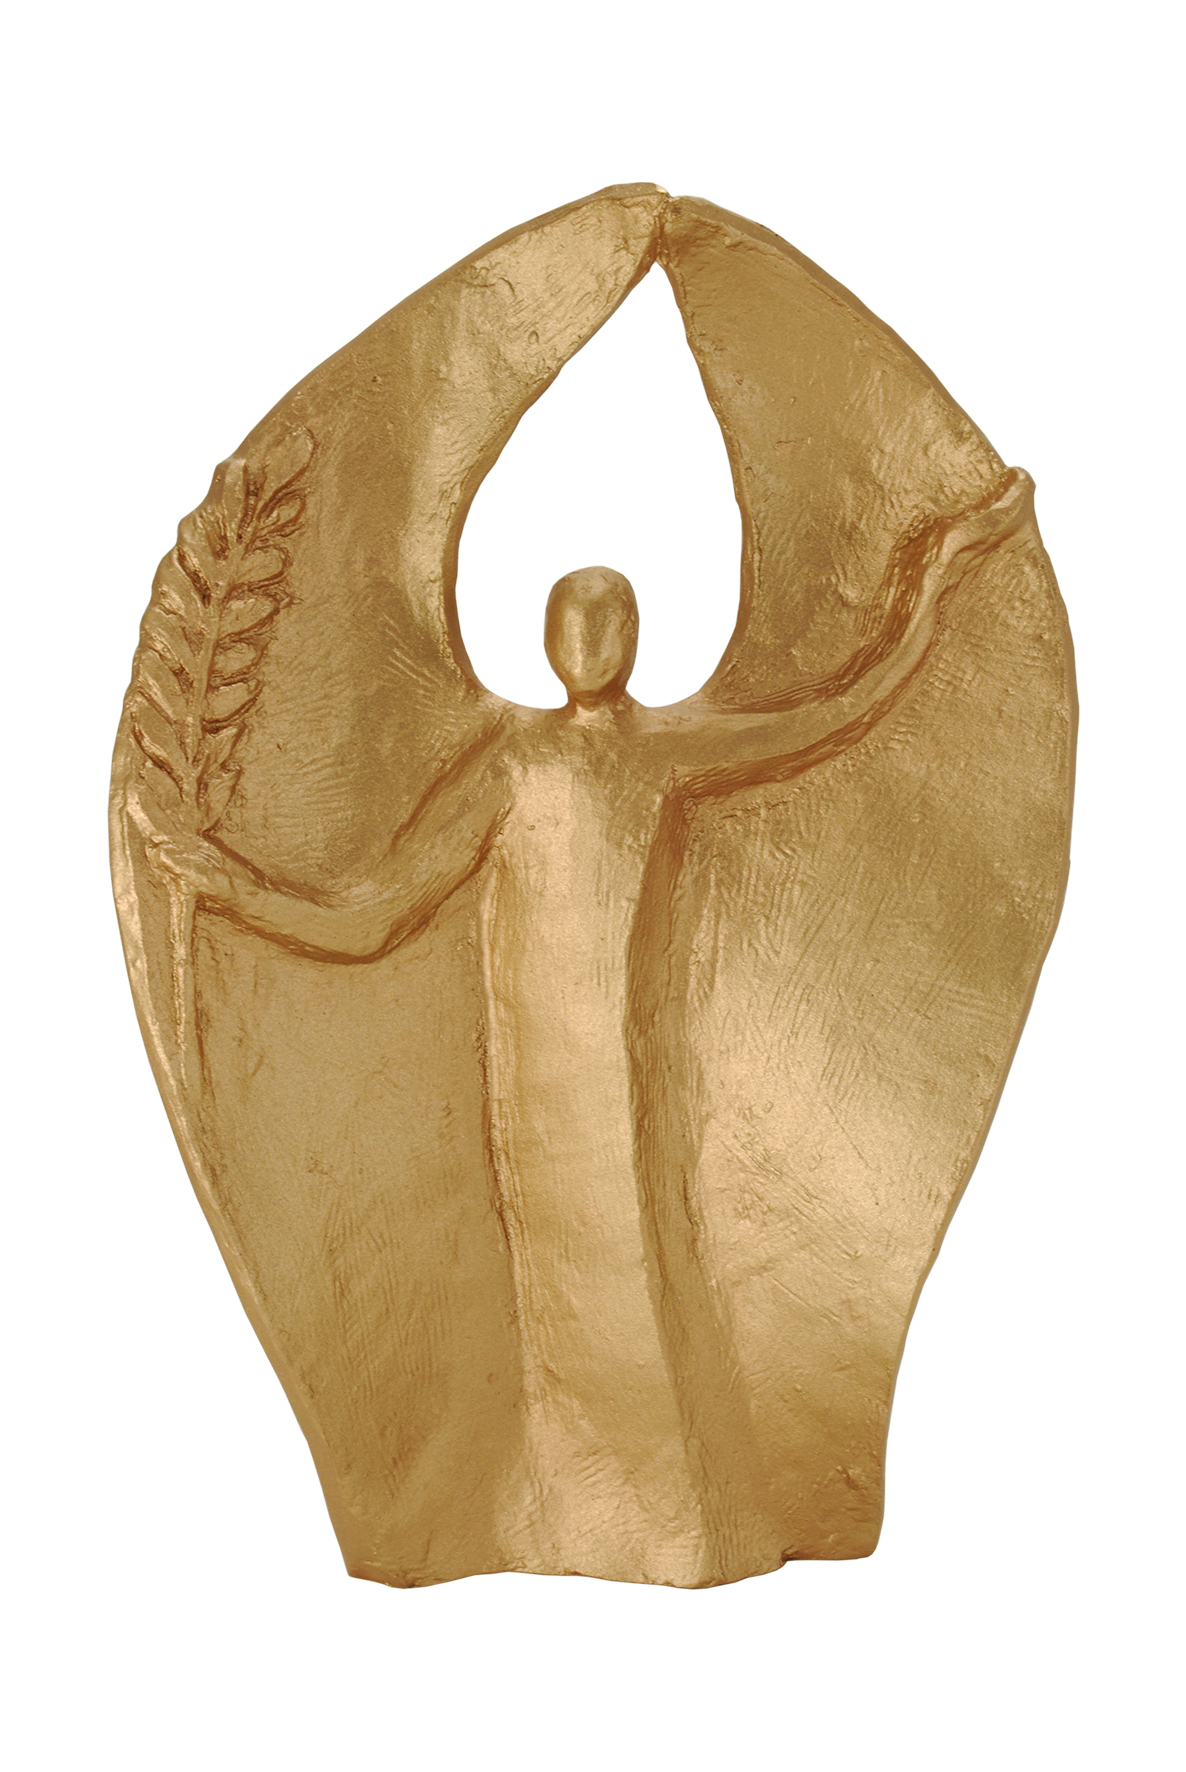 Bronzeengel - Engel des Friedens